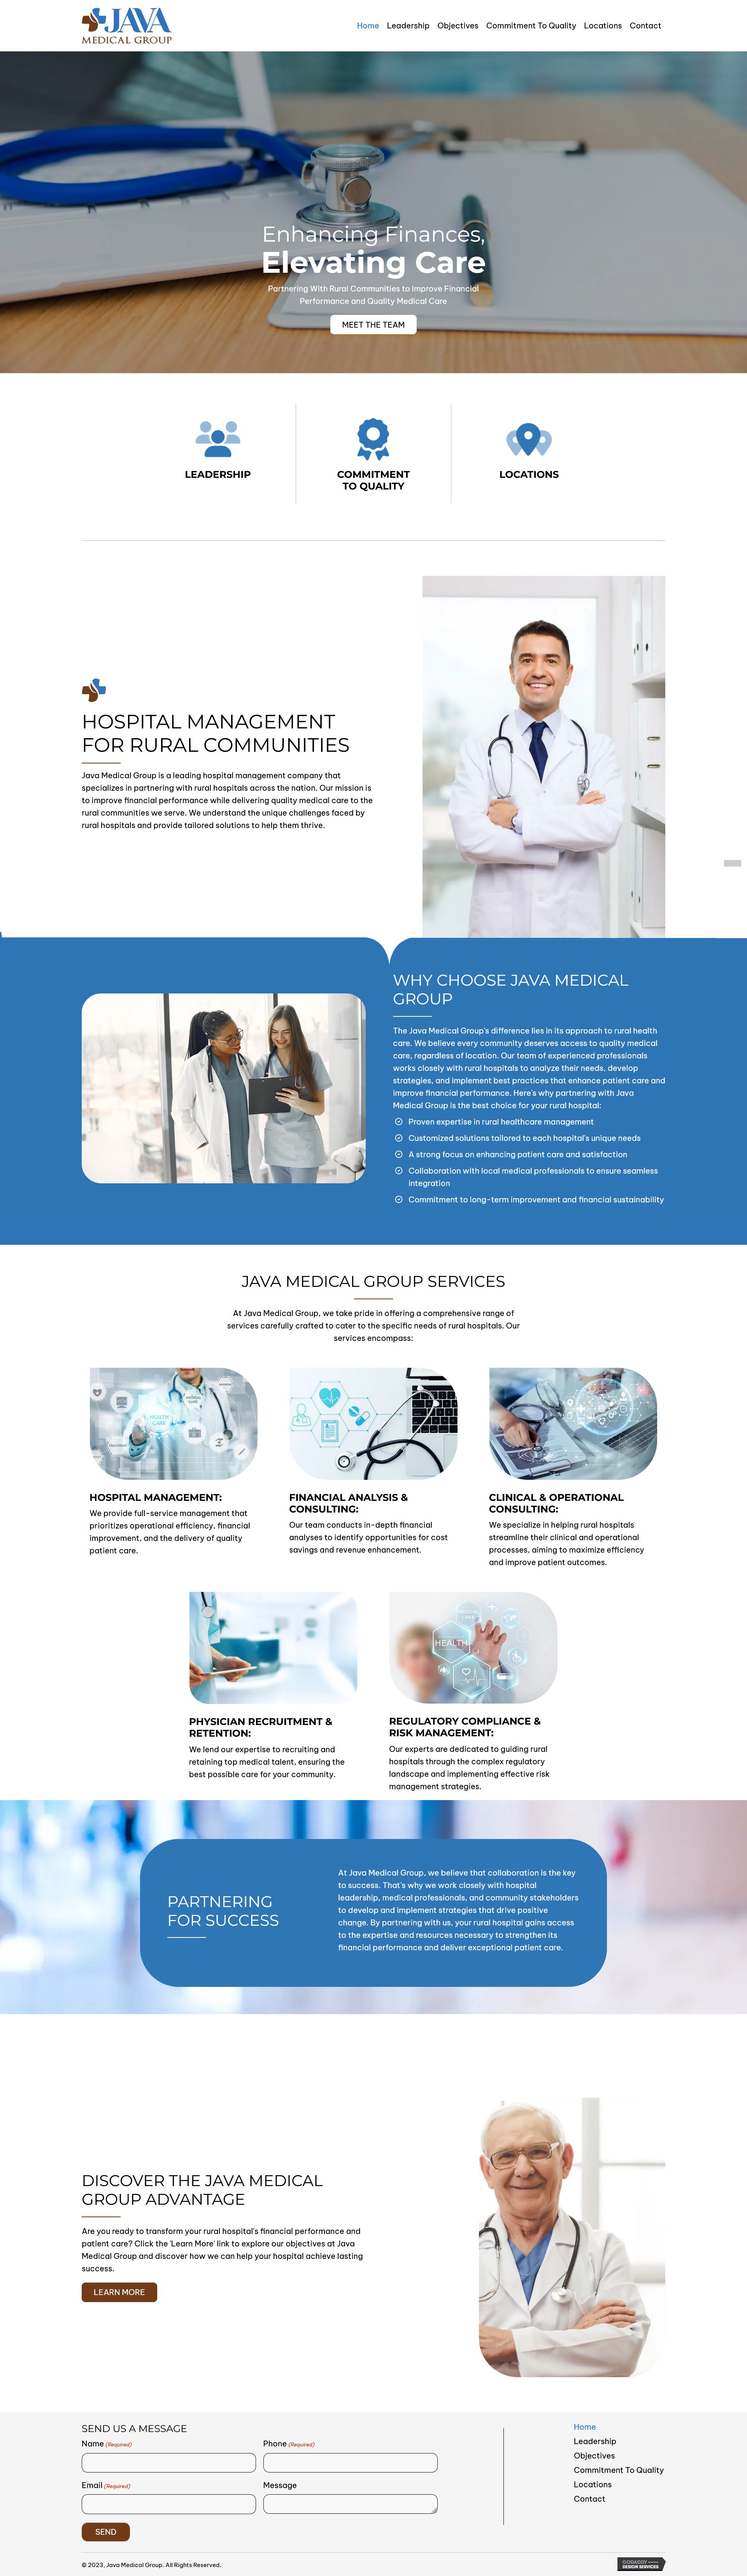 Hospital Management - Java Medical Group